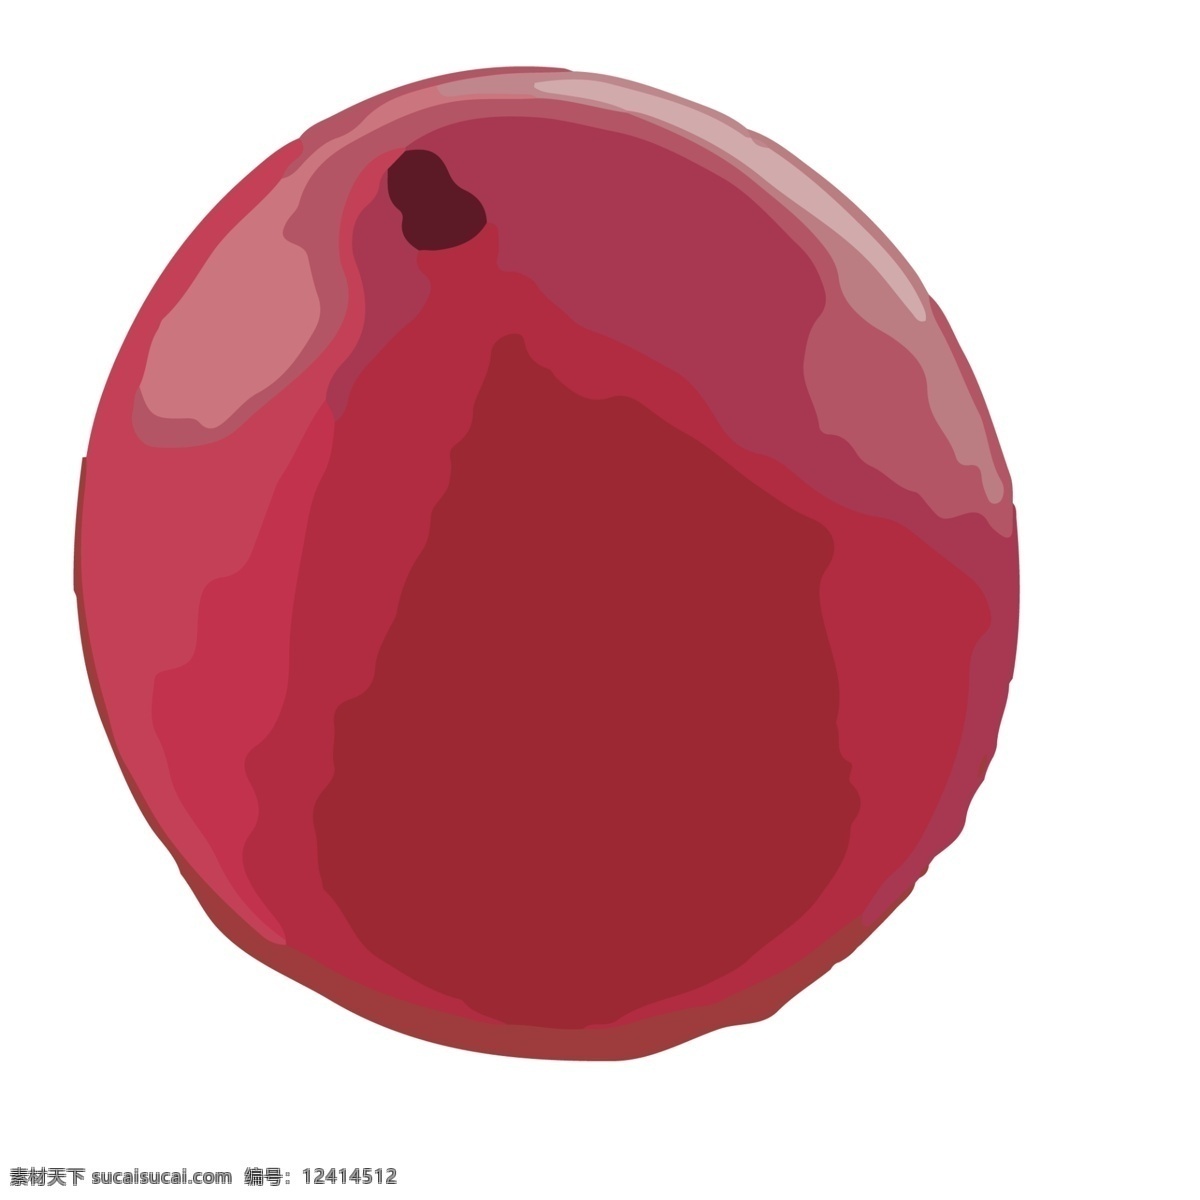 红色 圆形 气球 免 抠 图 卡通气球 红色的爱心 圆 飘 起来 卡通圆气球 爱心球 扣 圆圆